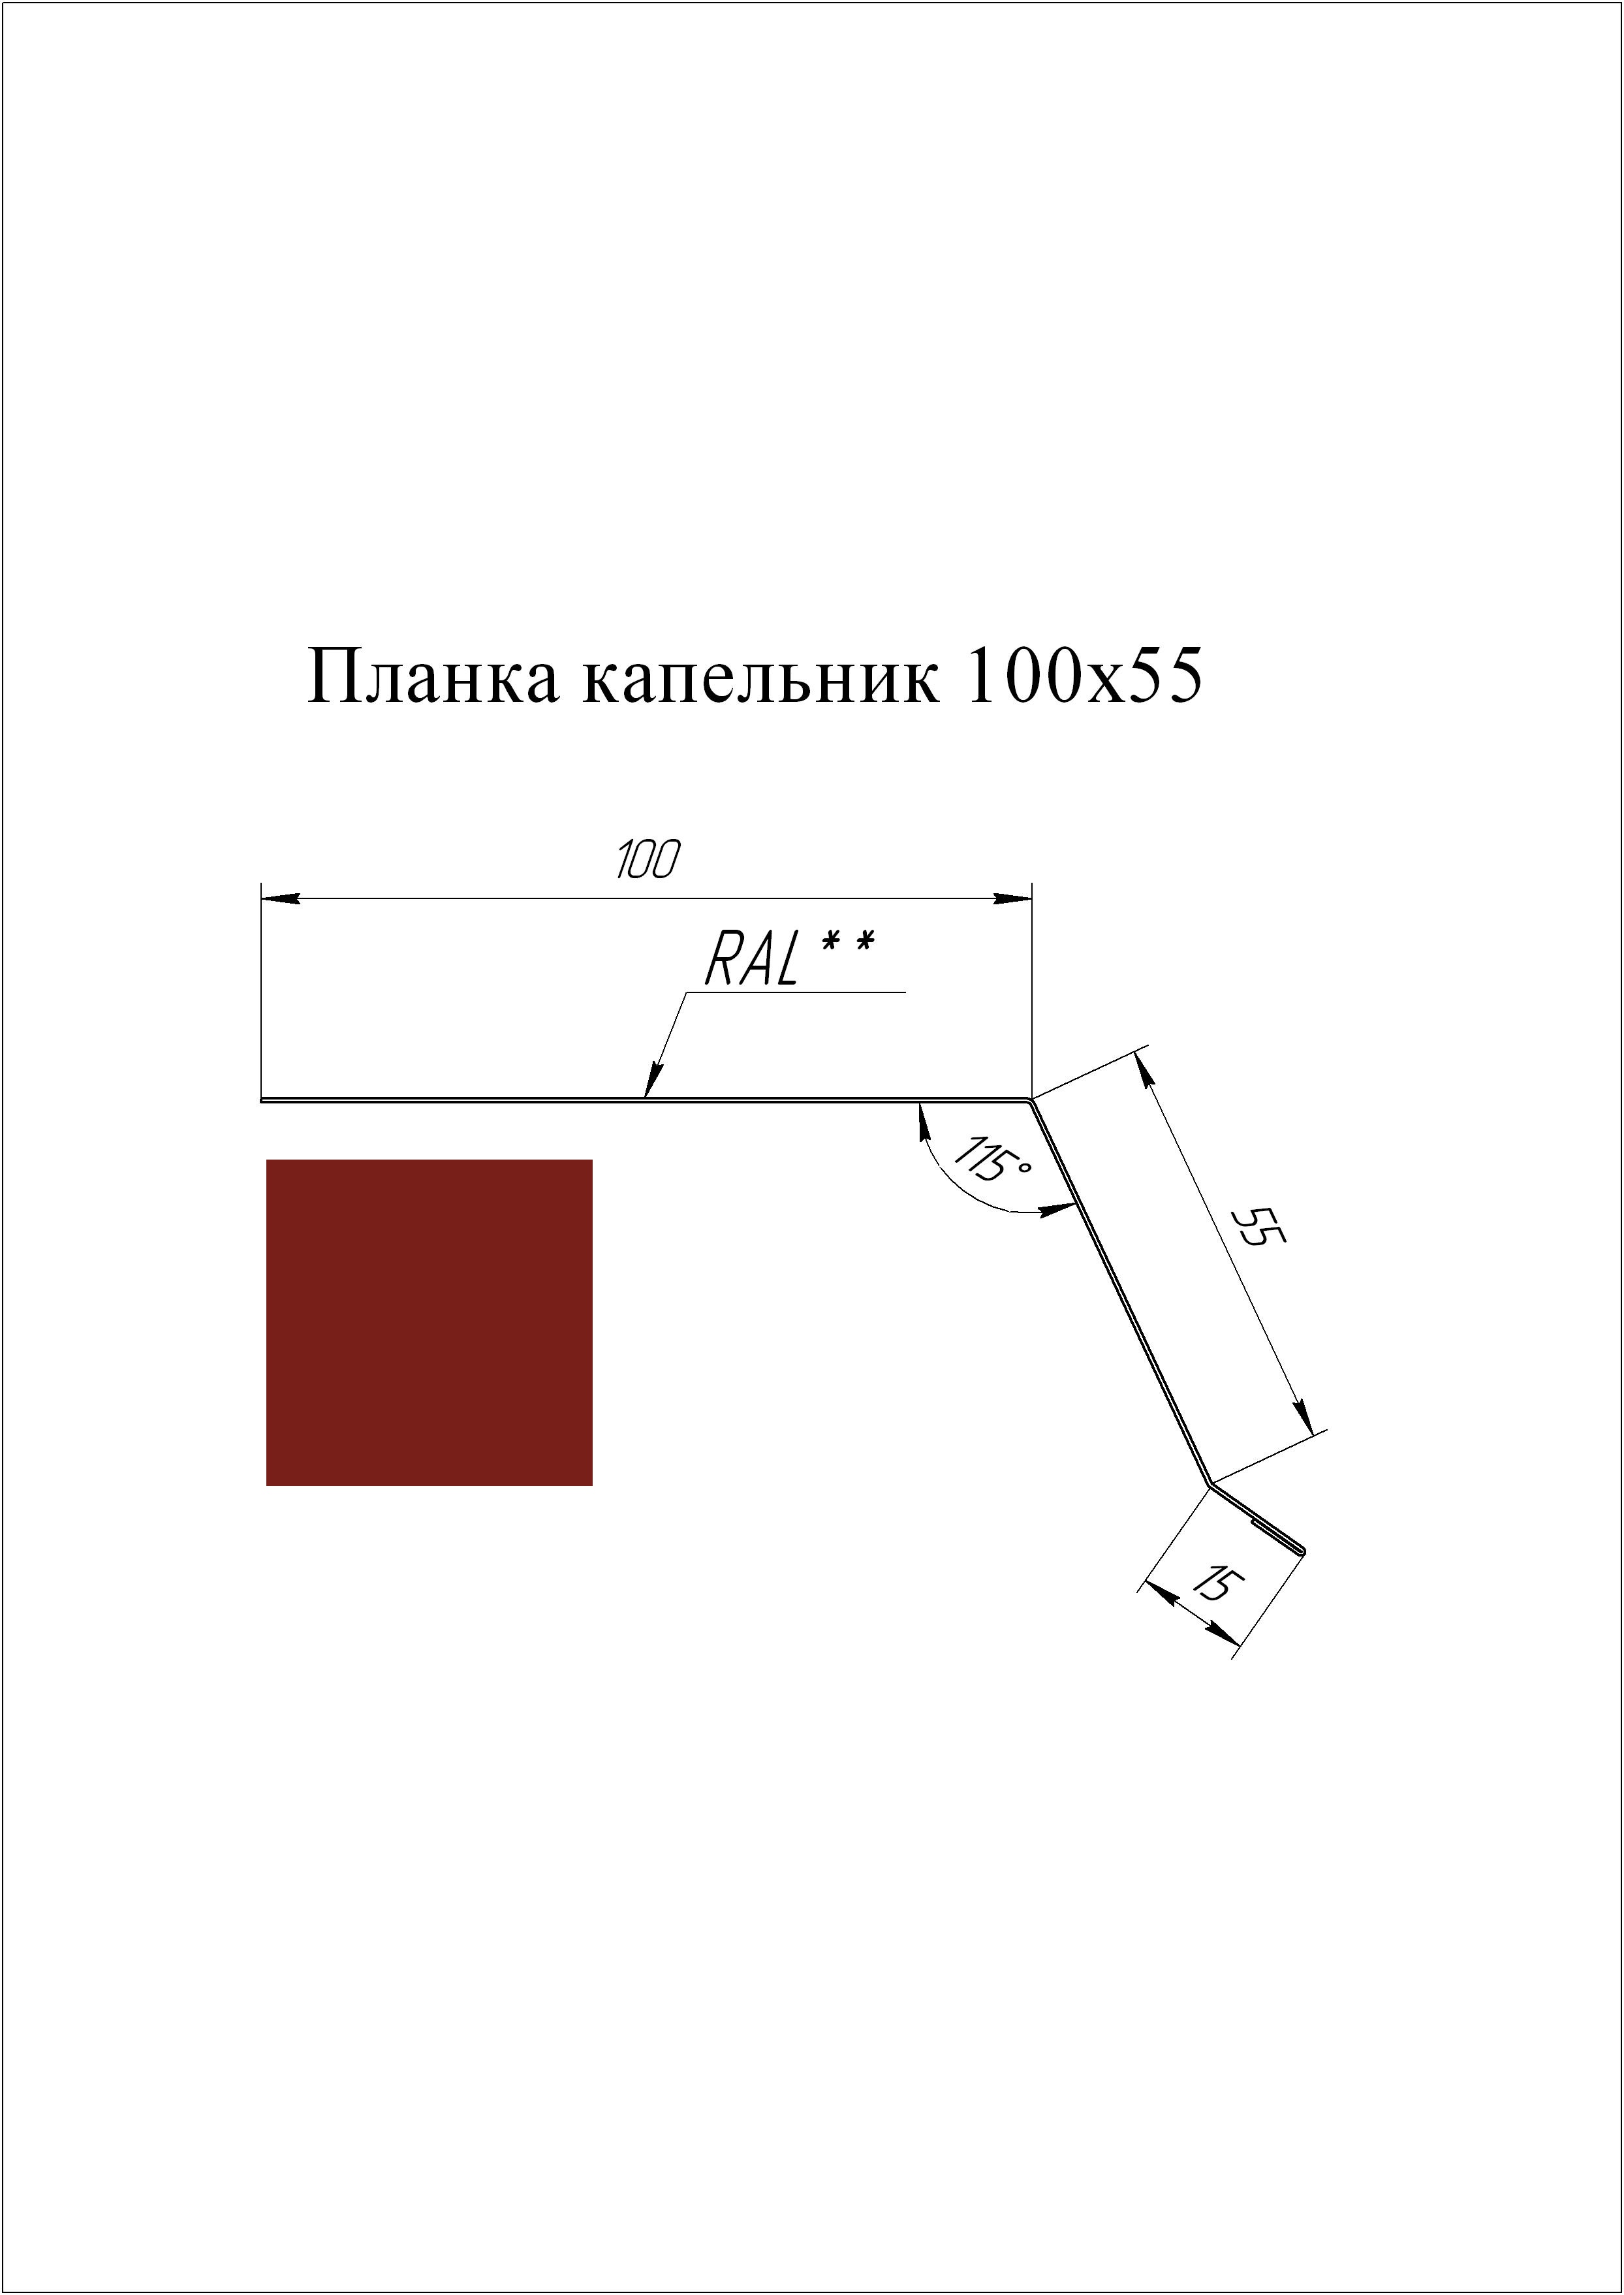 Планка капельник 100*55 мм L=2 м GL PE-полиэстер 0,45 RAL 3011 - коричнево-красный